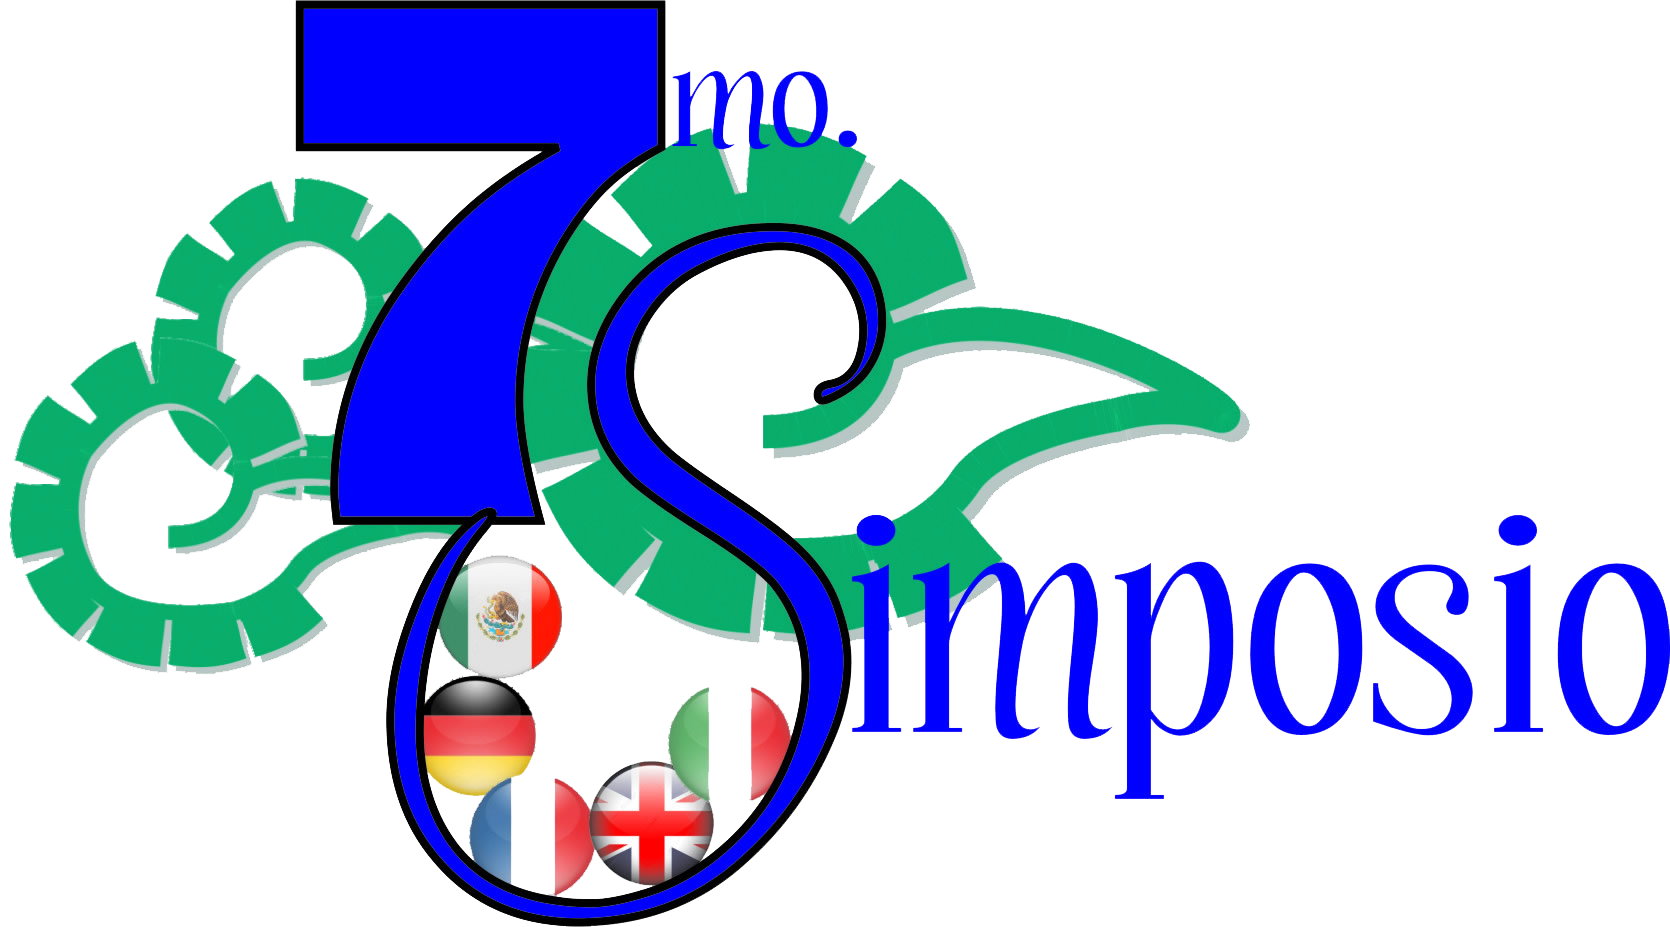  imagen del logo 7mo Simposio